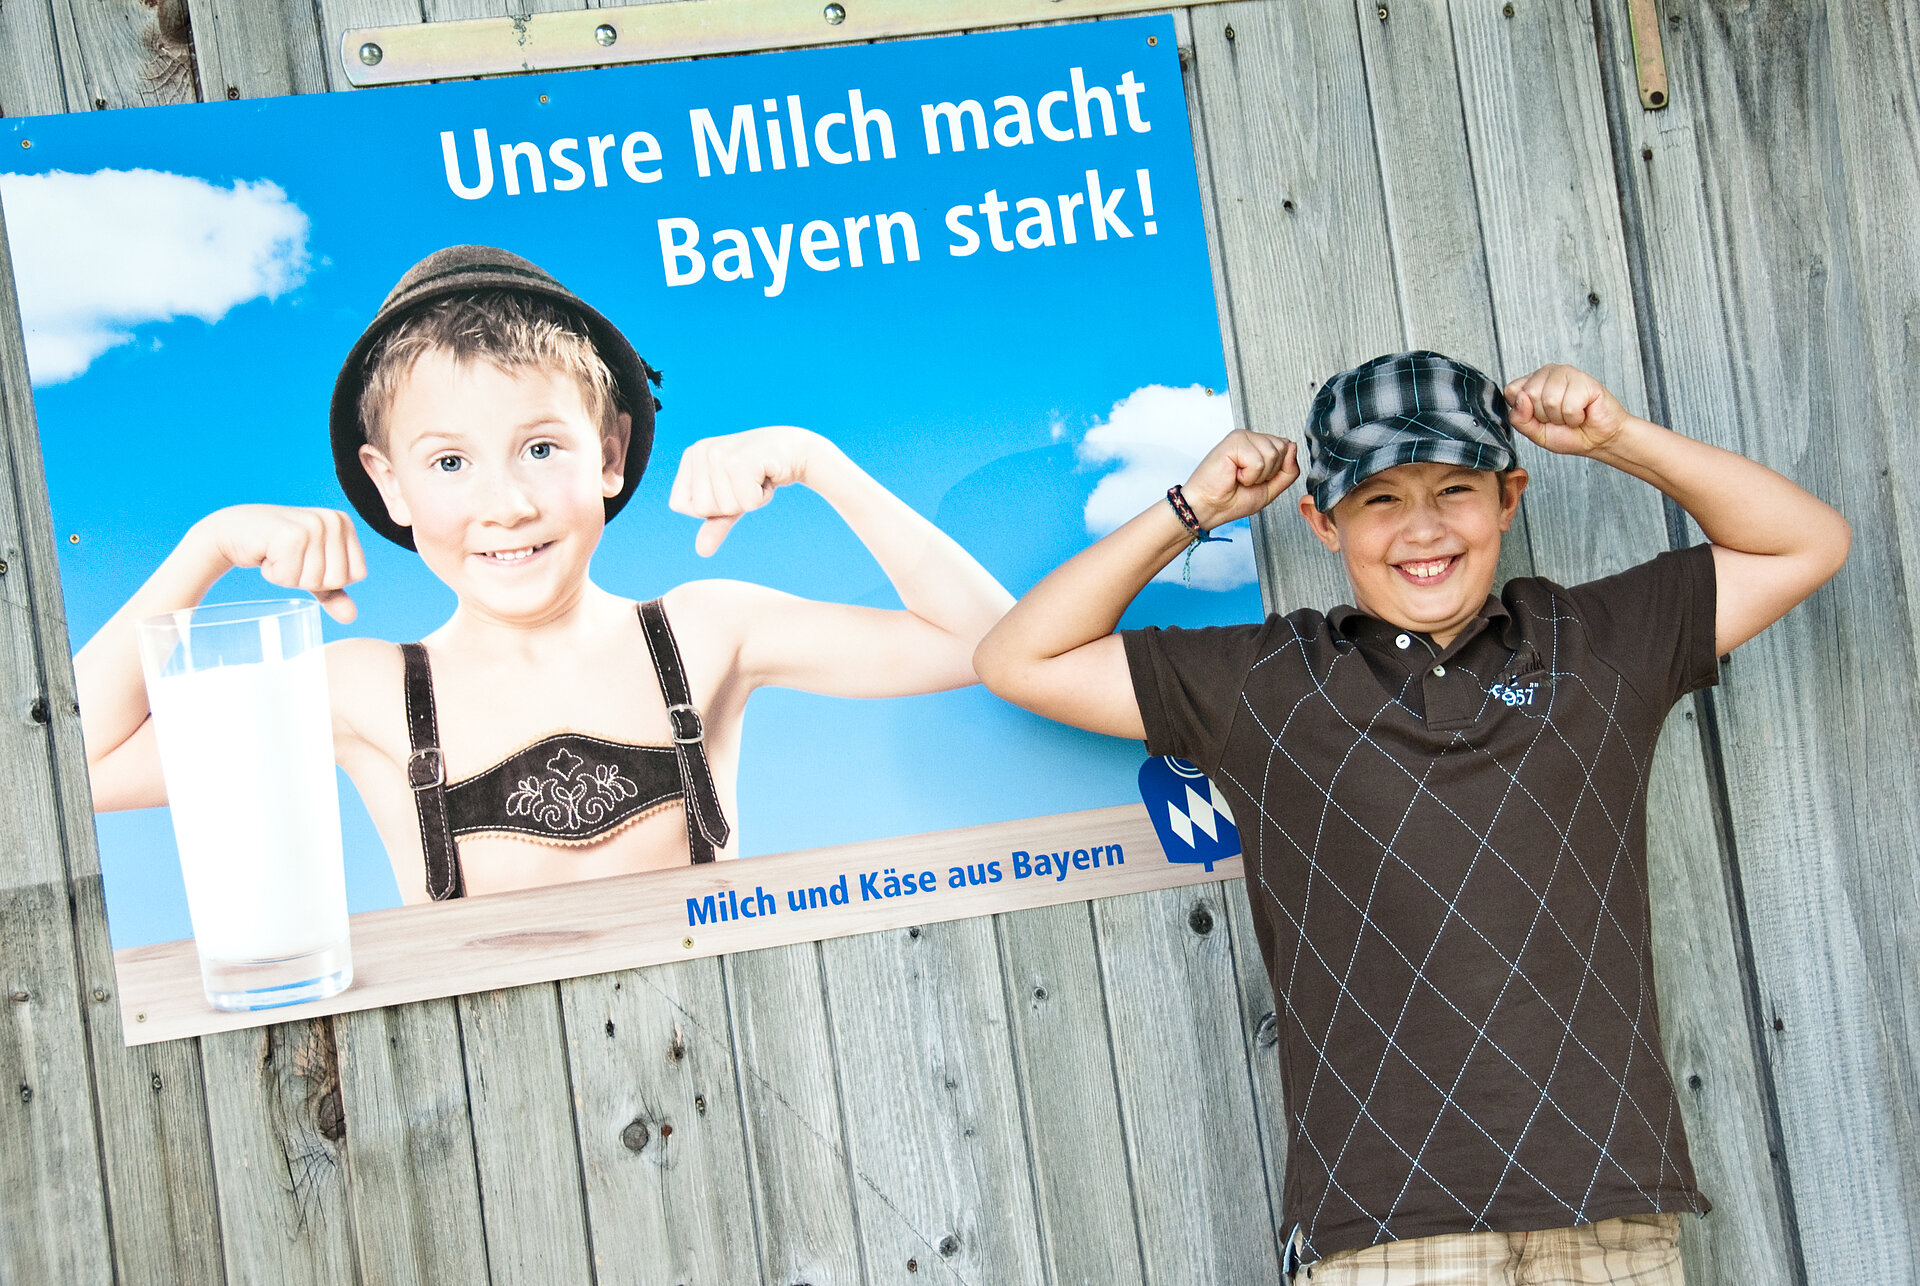 Ein Junge steht vor Plakat "Unsere Milch macht Bayern stark" und zeigt seine Muskeln.